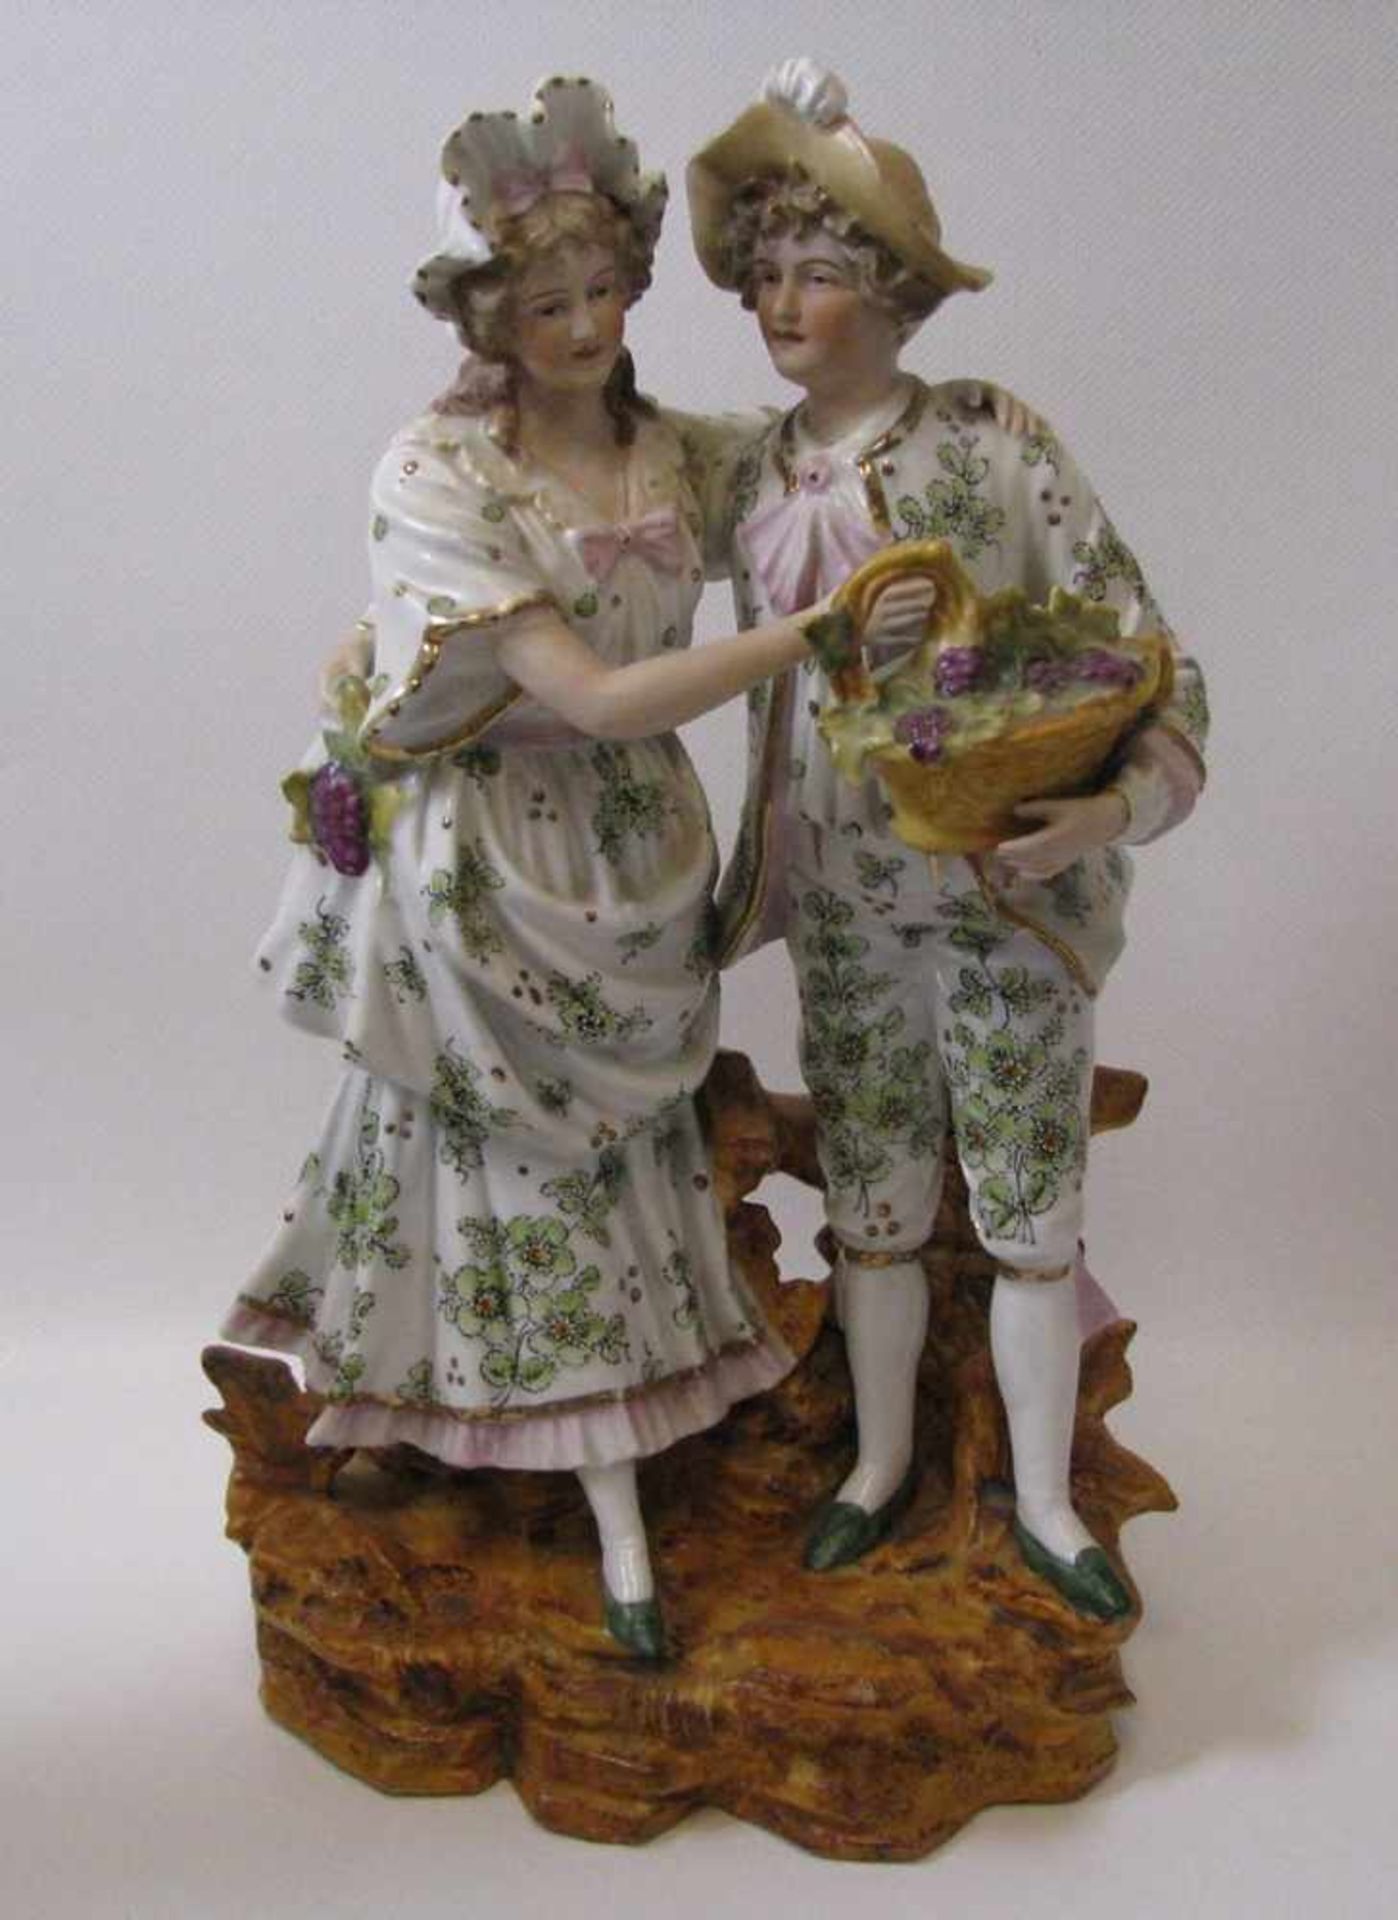 Porzellangruppe, Galantes Paar, um 1900, Biskuitporzellan mit polychromer Bemalung, 34 x 22 x 15 cm.